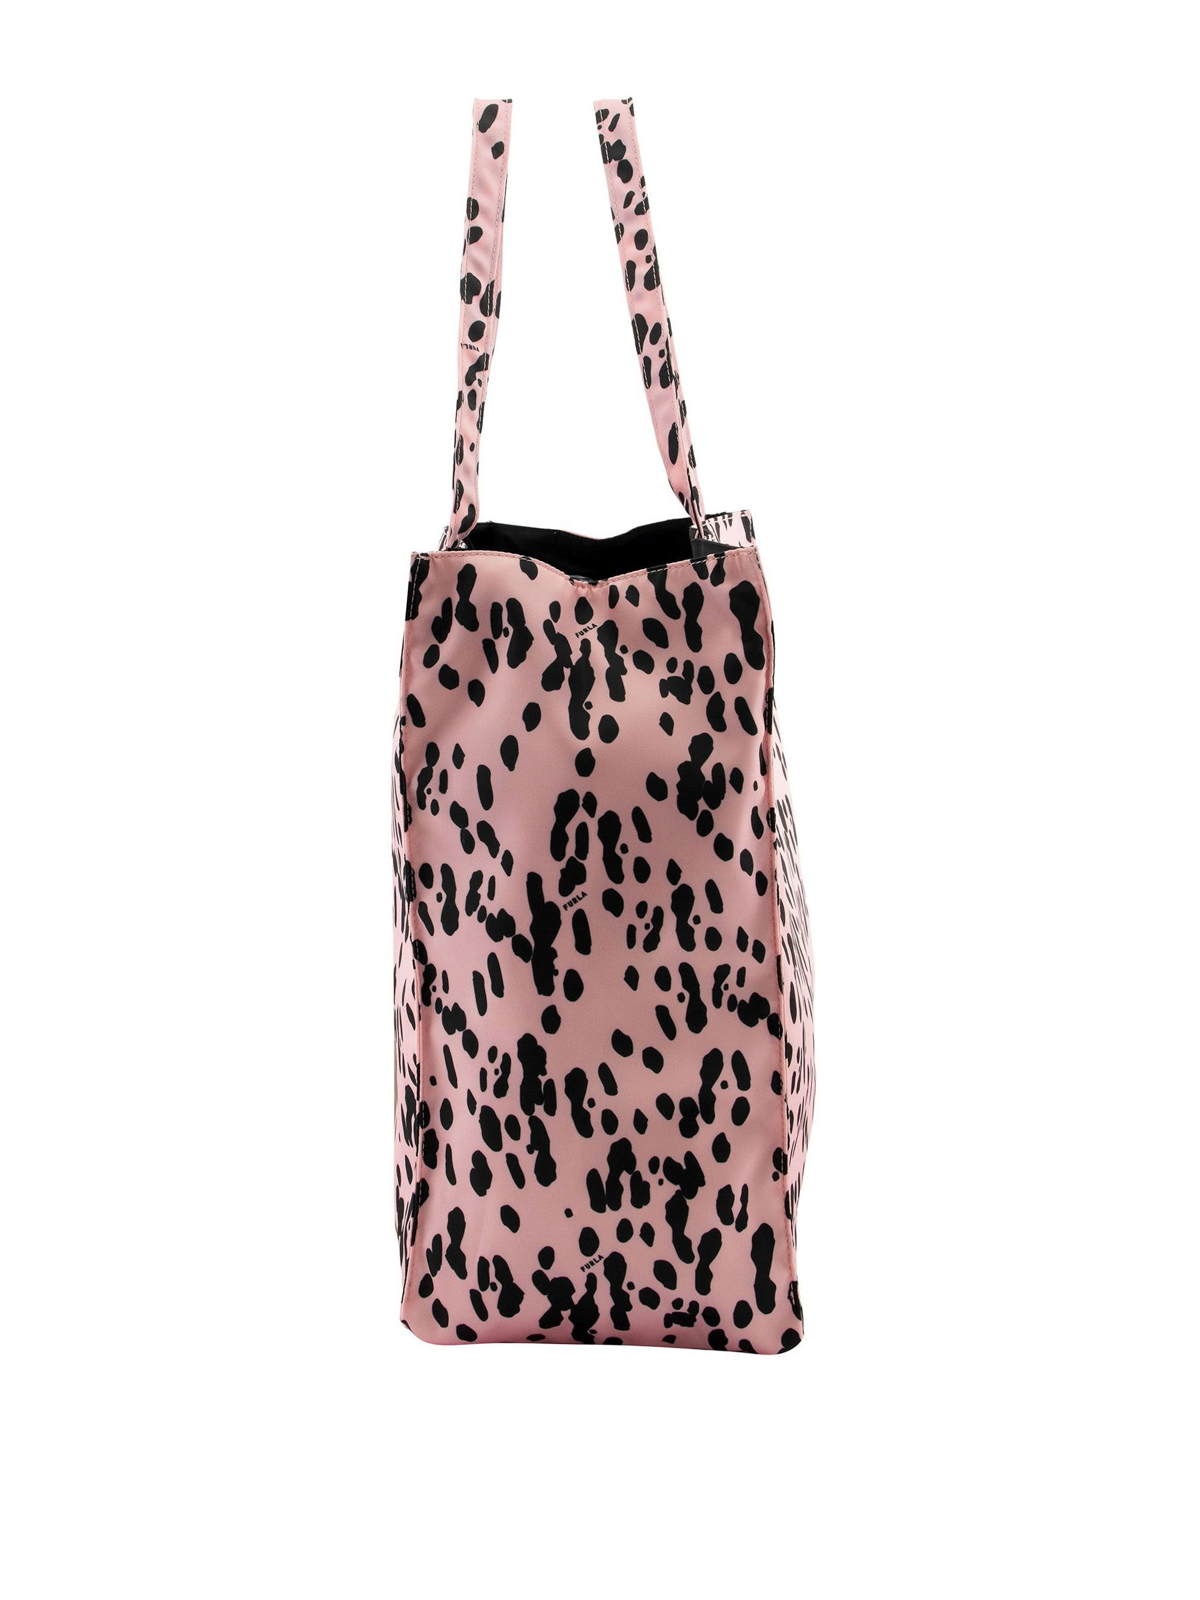 Totes bags Furla - Furla Digit shopping bag - 1055634 | iKRIX.com